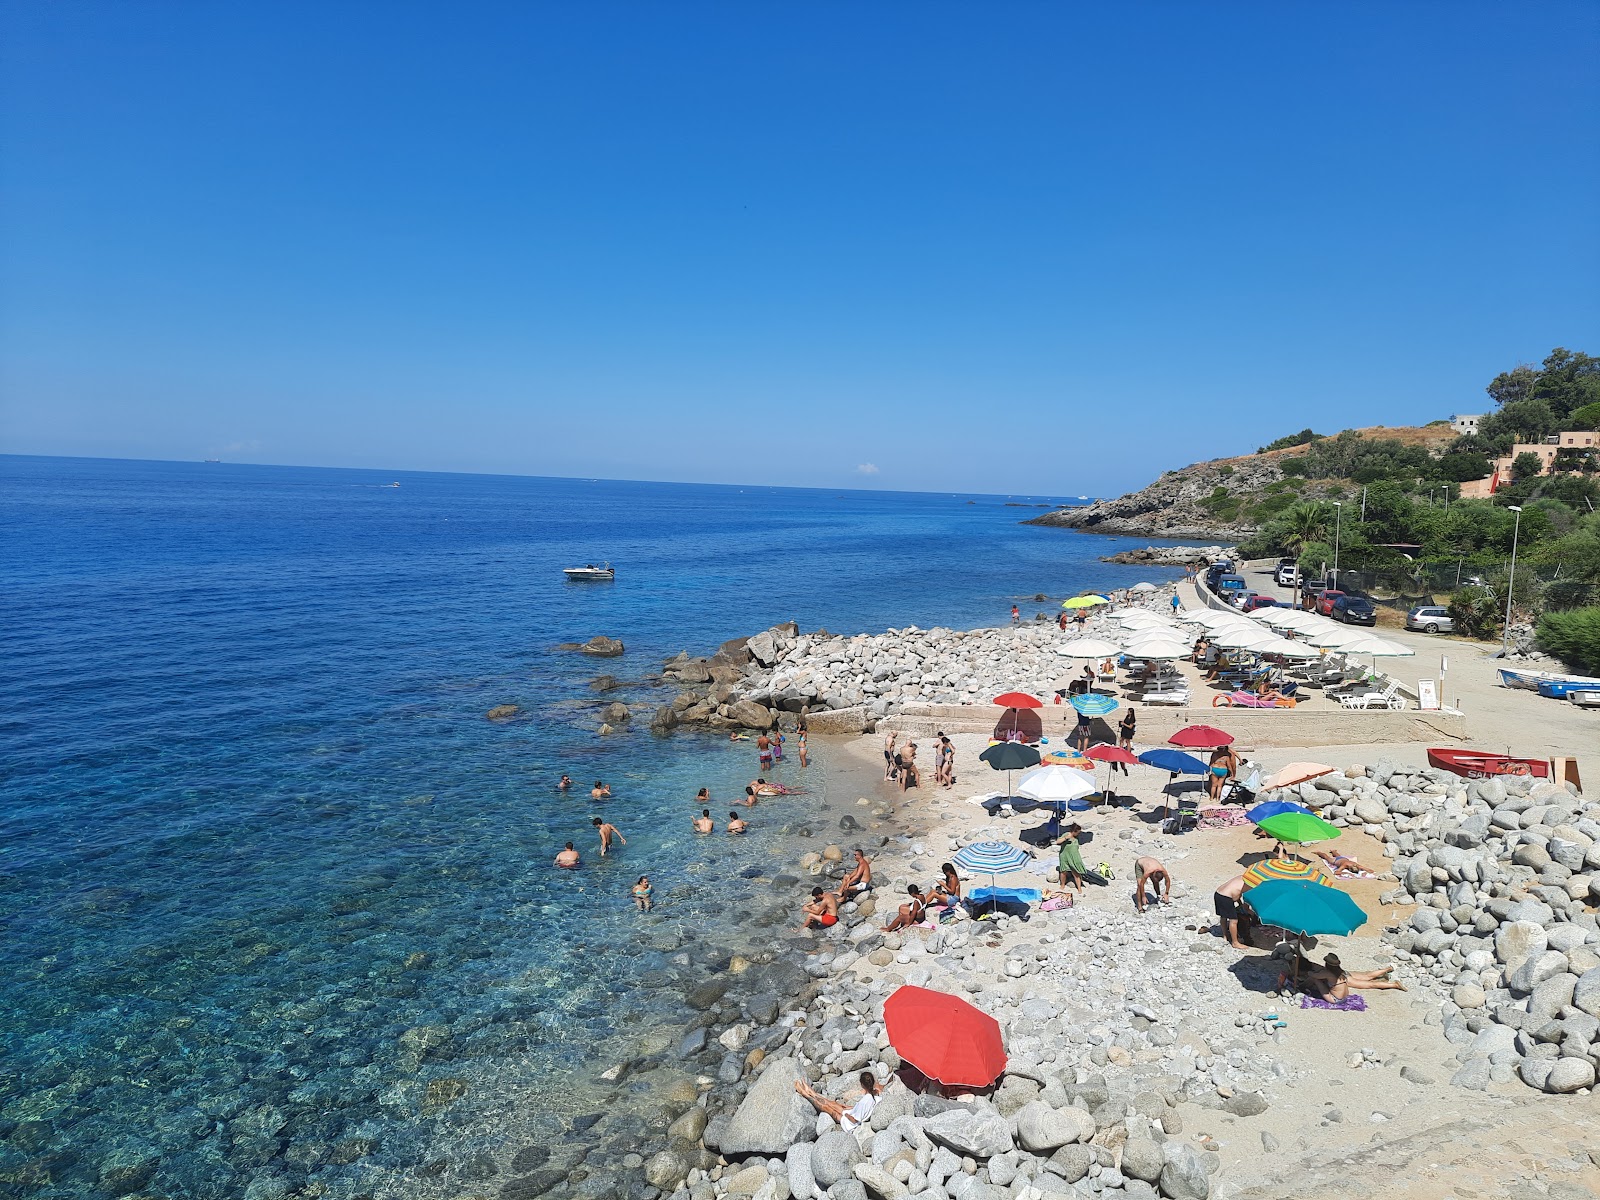 Spiaggia di Coccorino'in fotoğrafı parlak kum ve kayalar yüzey ile